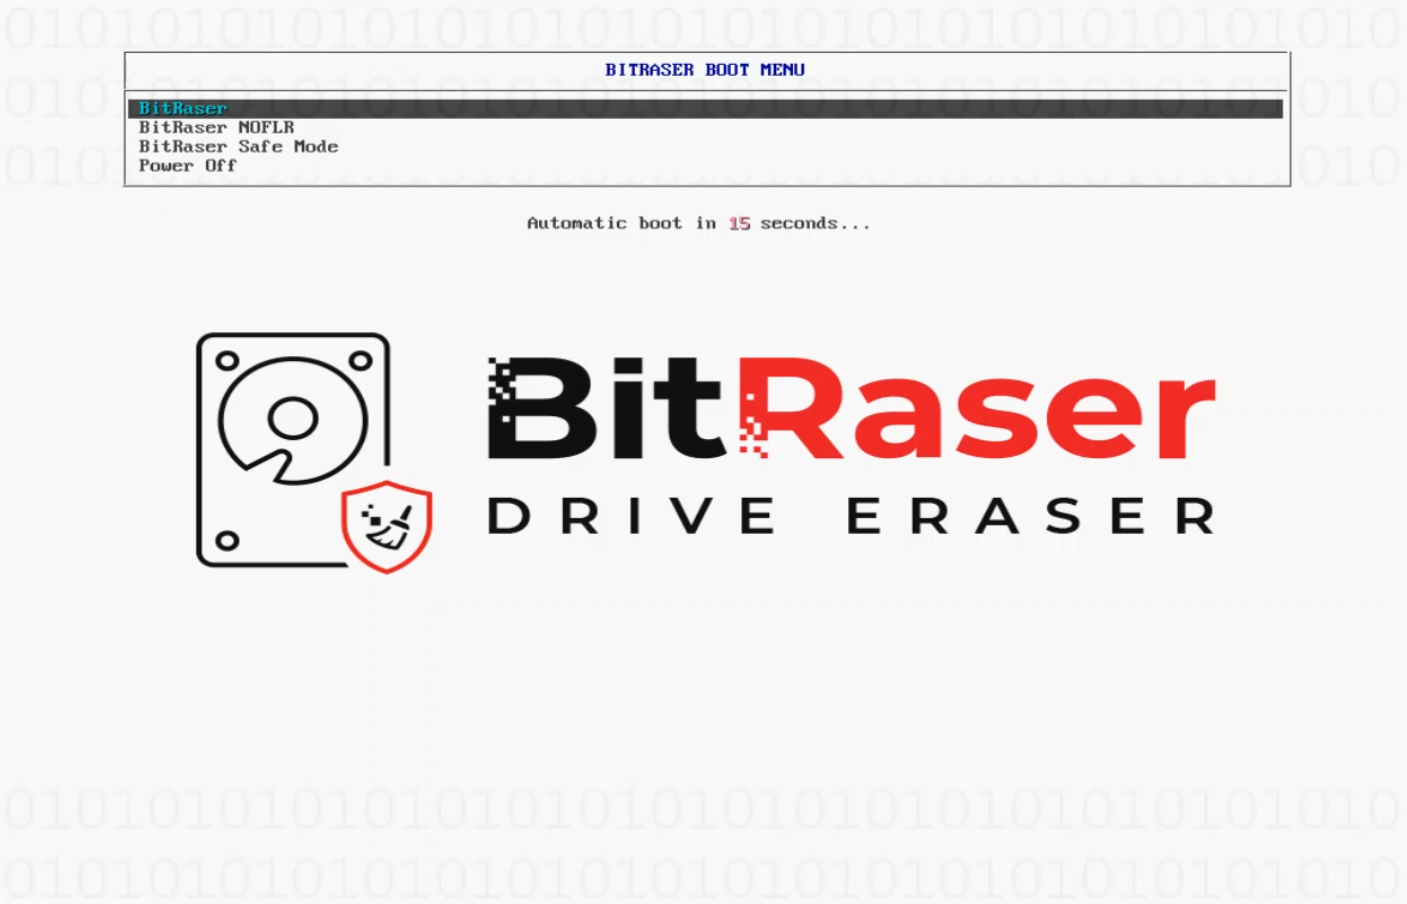 BitRaser Dual Boot menu